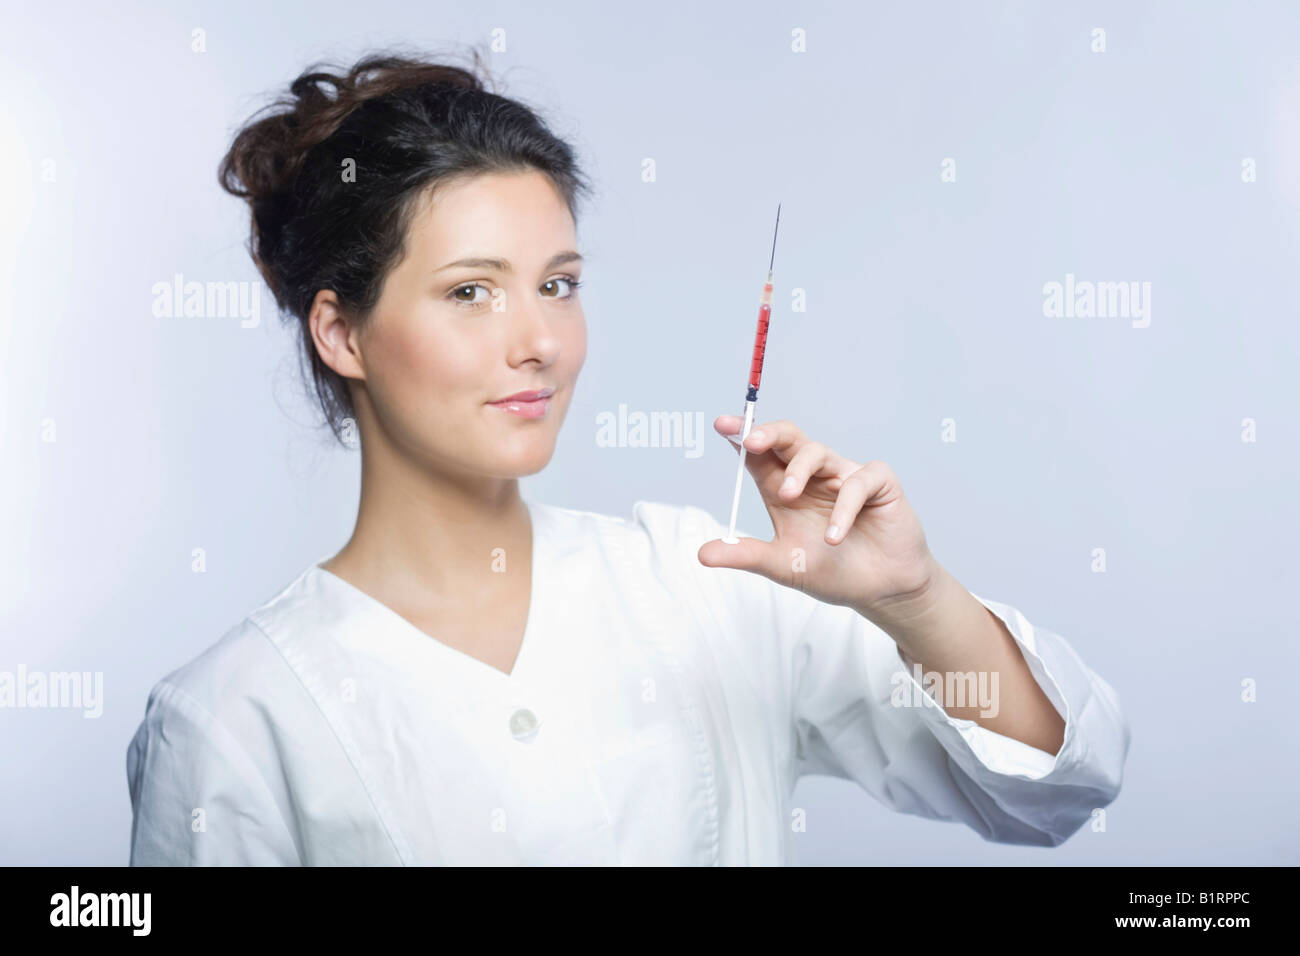 Jeune femme portant un sarrau de laboratoire blanc tenant une seringue remplie de liquide rouge dans sa main Banque D'Images